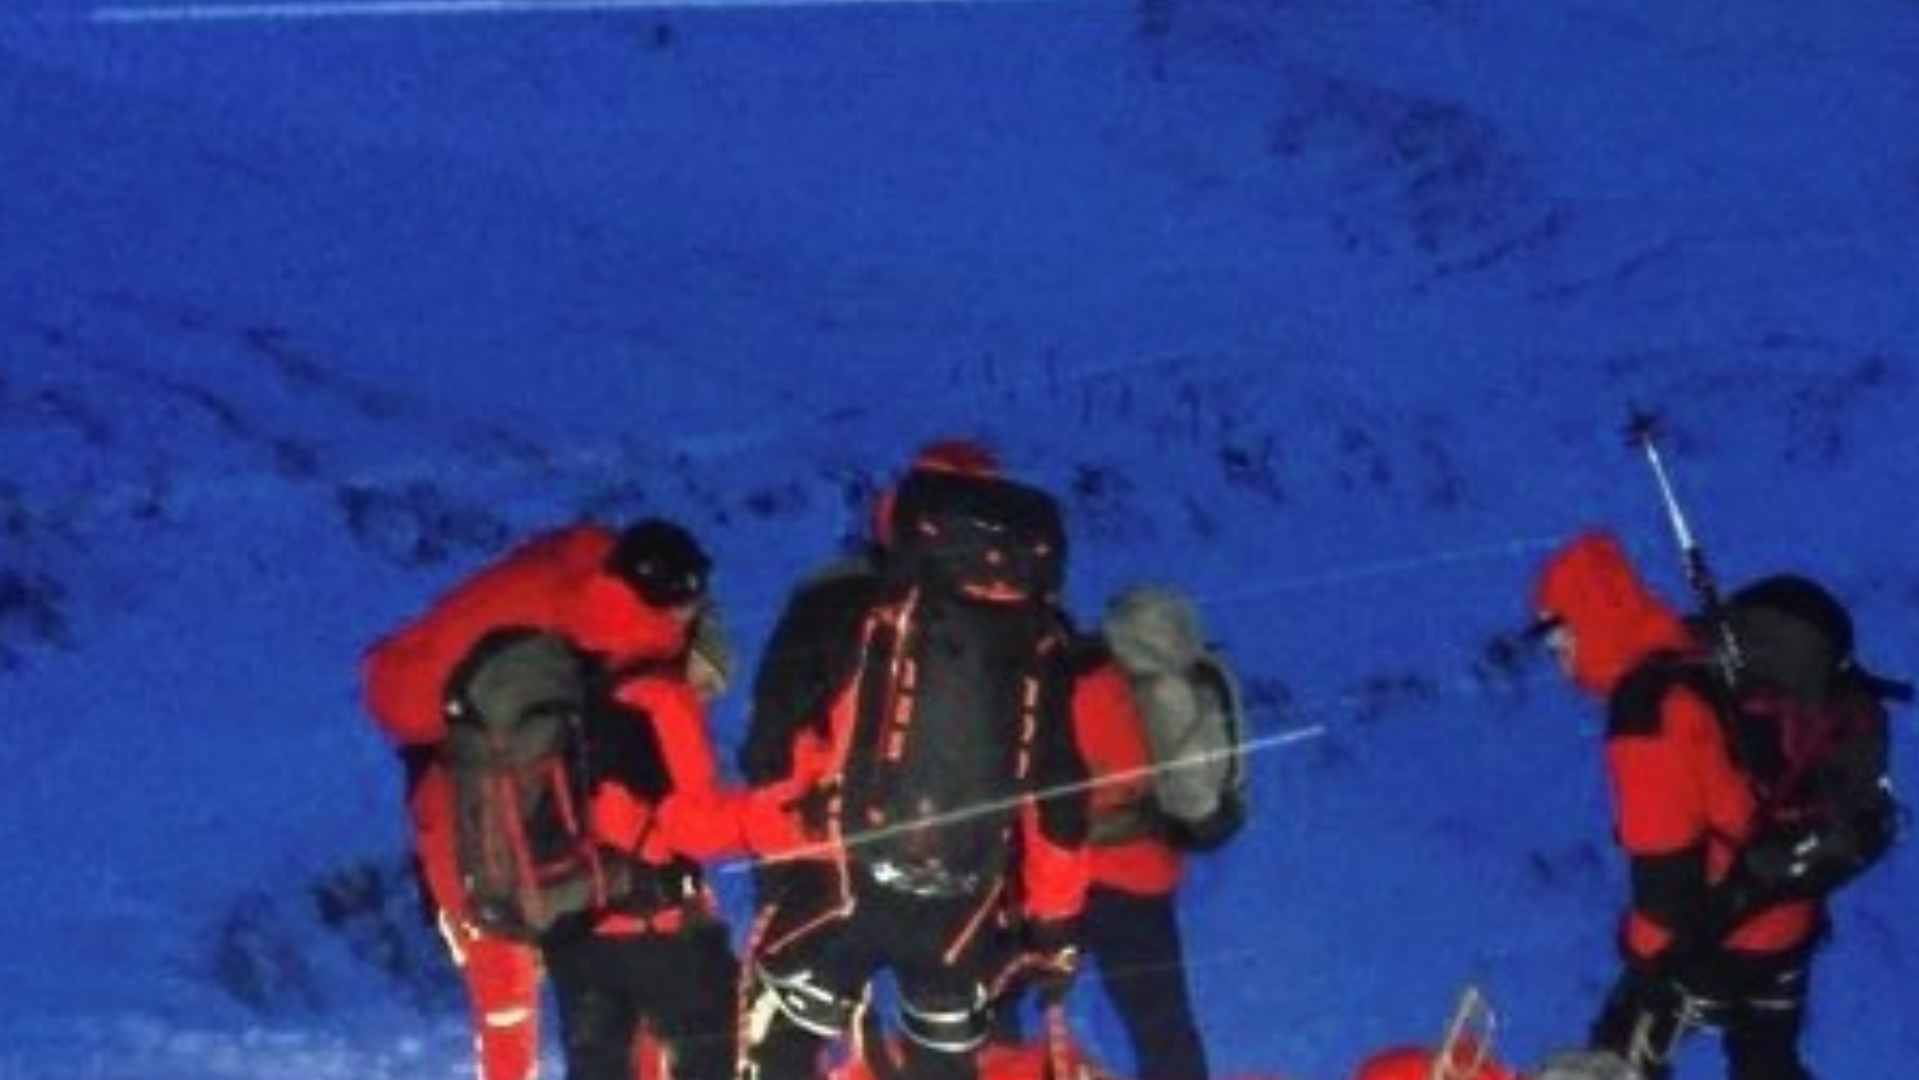 Au milieu de la nuit, le skieur disparu a pu être retrouvé indemne (image symbolique). (Bild: zoom.tirol)